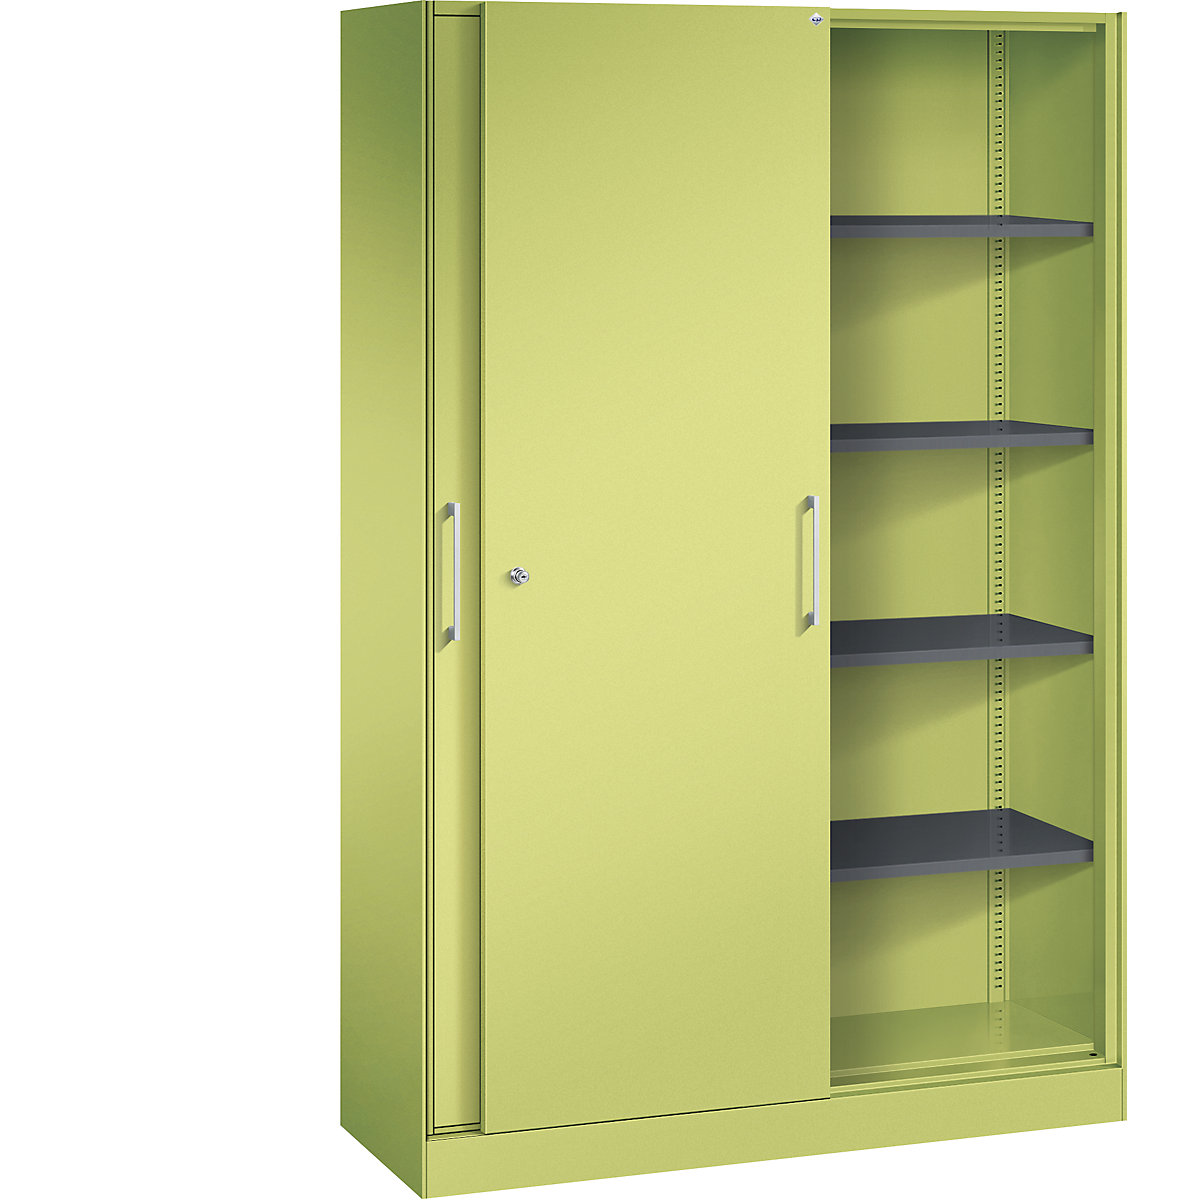 ASISTO sliding door cupboard, height 1980 mm – C+P, width 1200 mm, viridian green/viridian green-16